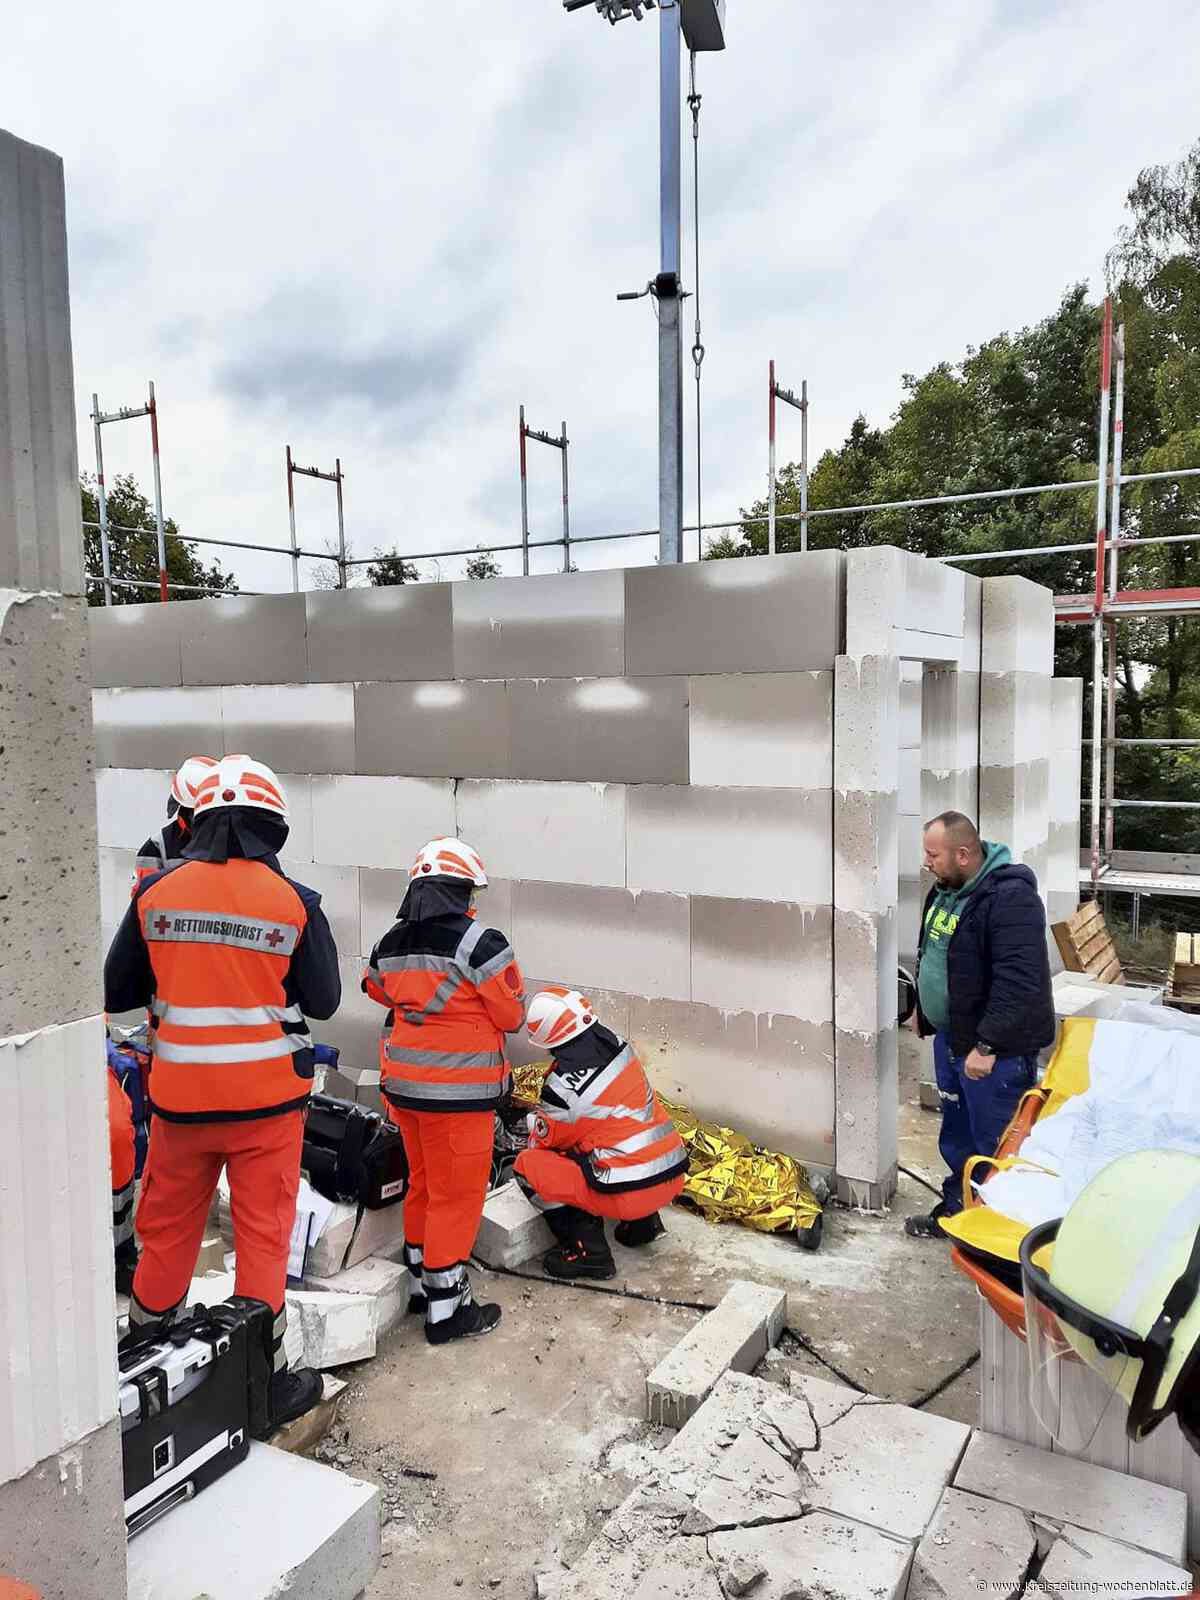 Von Kollegen befreit: Bauarbeiter beim Mauern von Steinen verschüttet - Kreiszeitung Wochenblatt